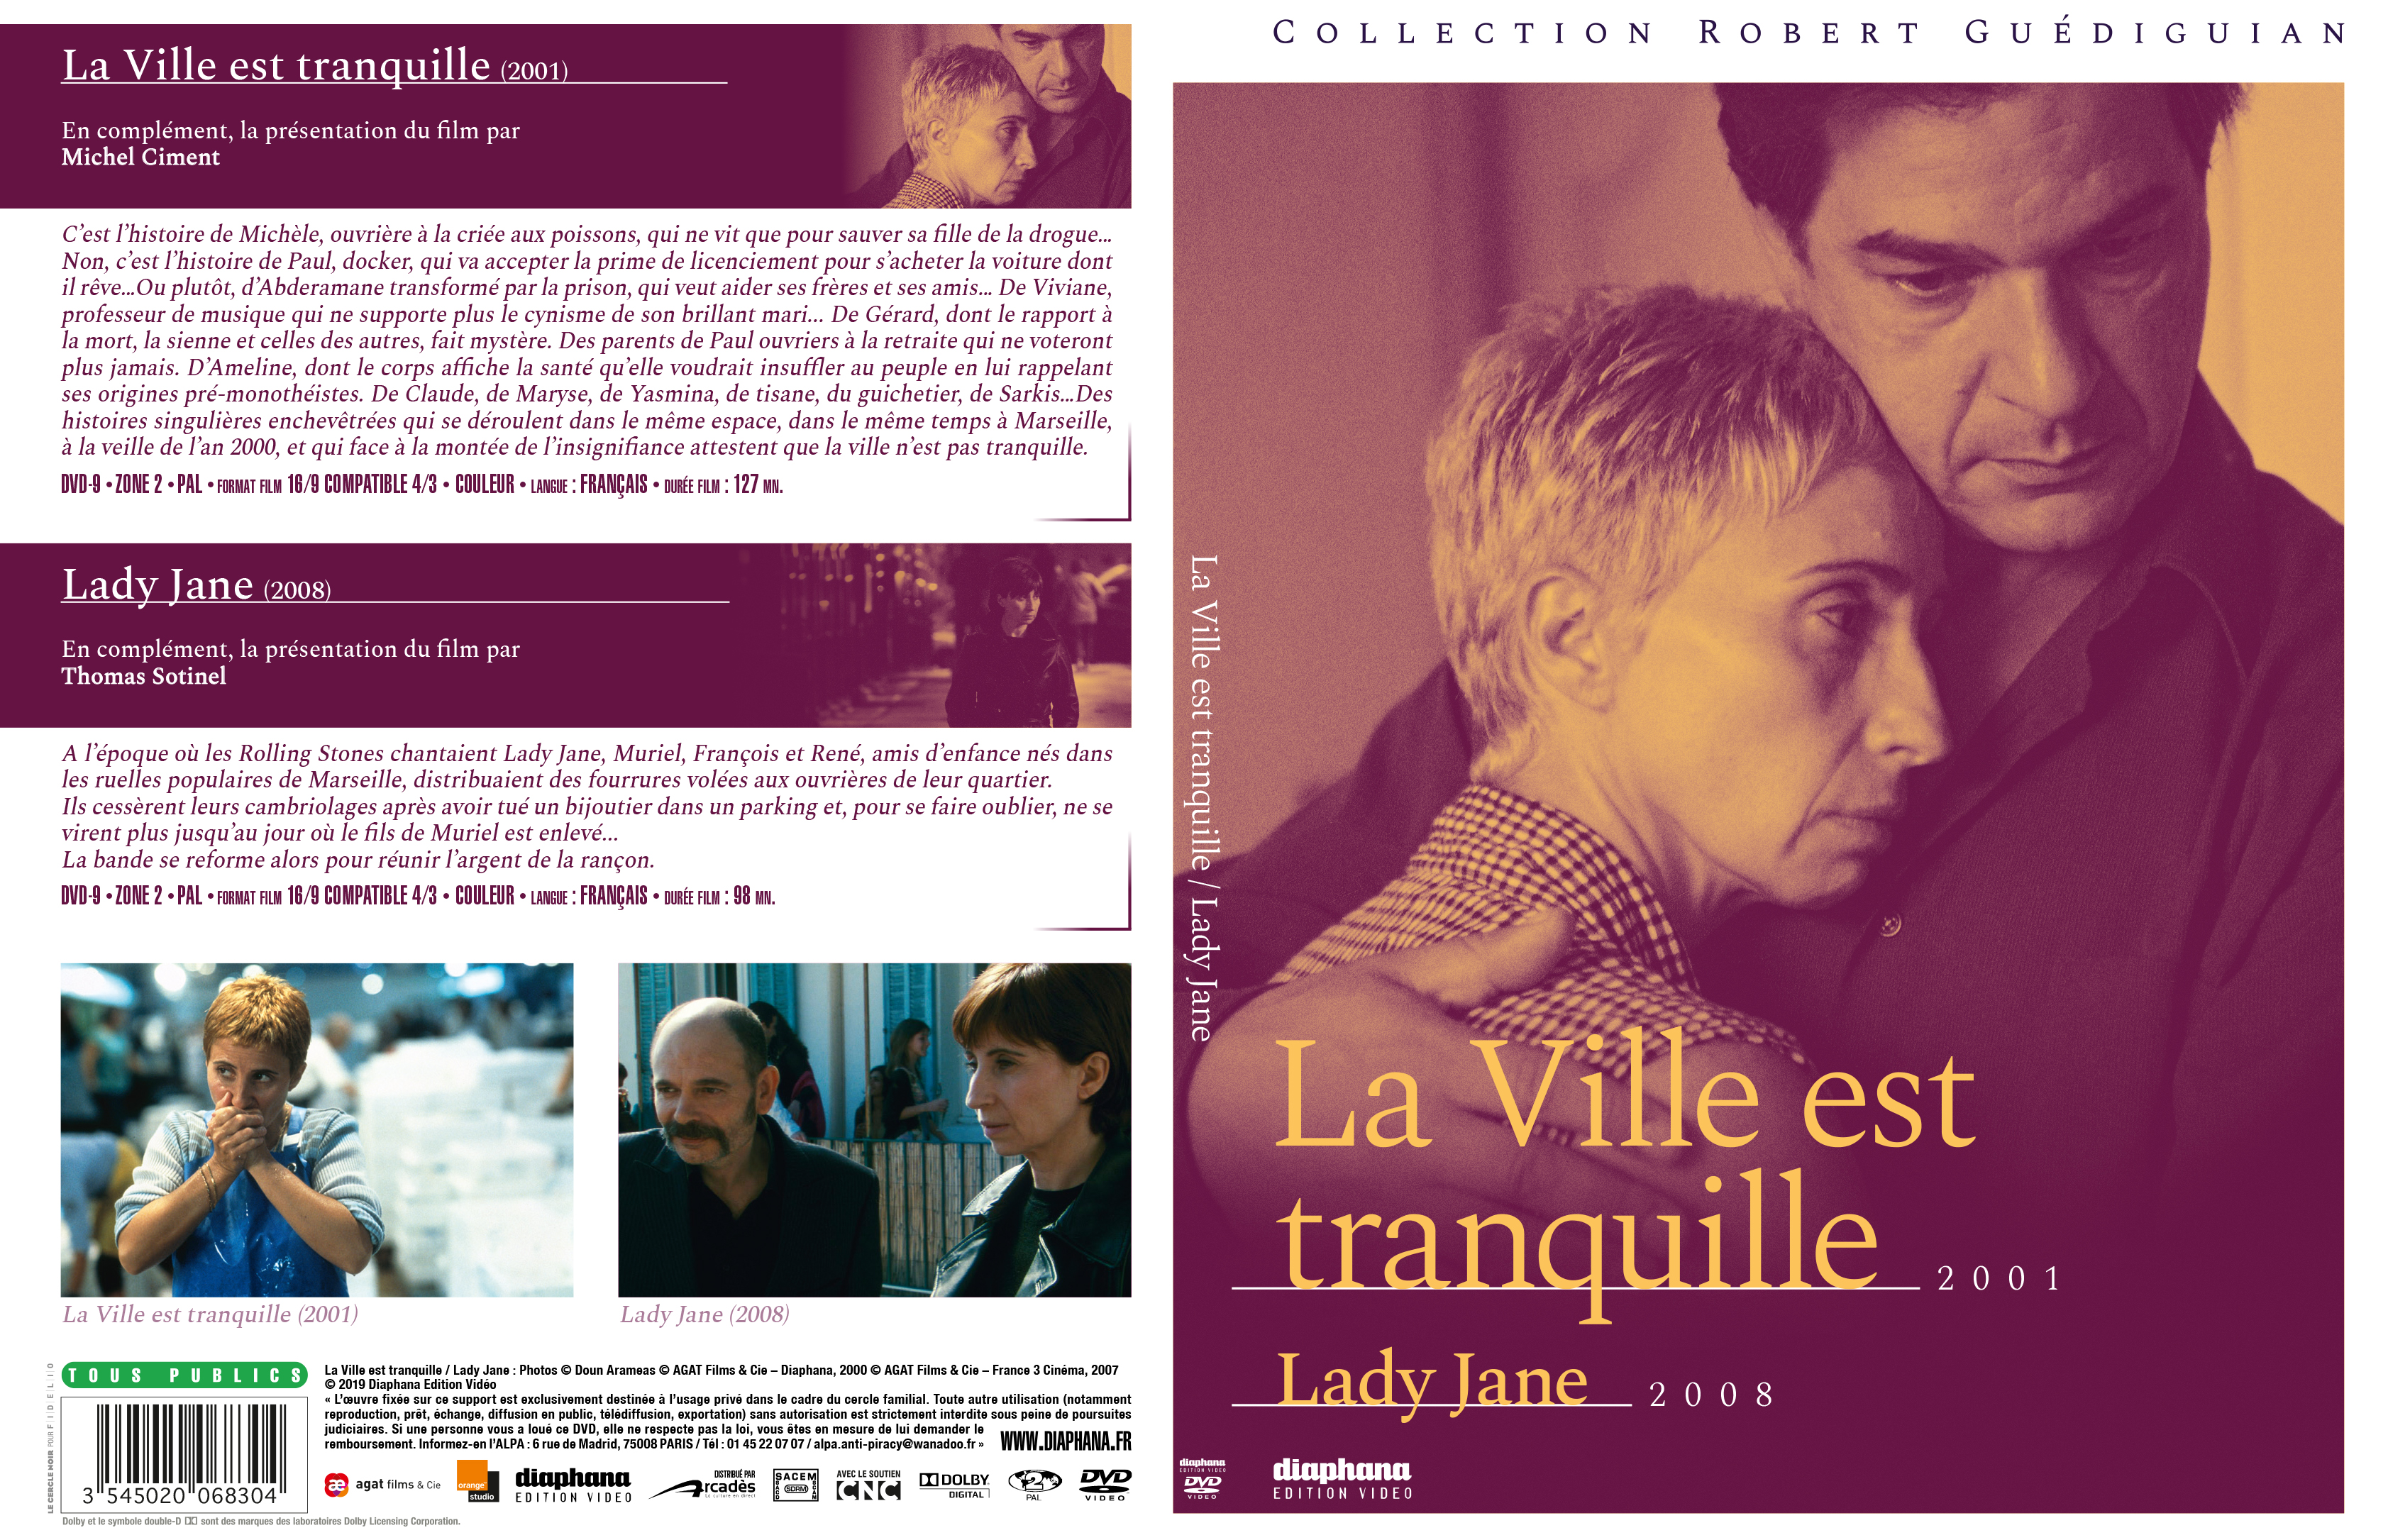 Jaquette DVD La Ville est tranquille v2